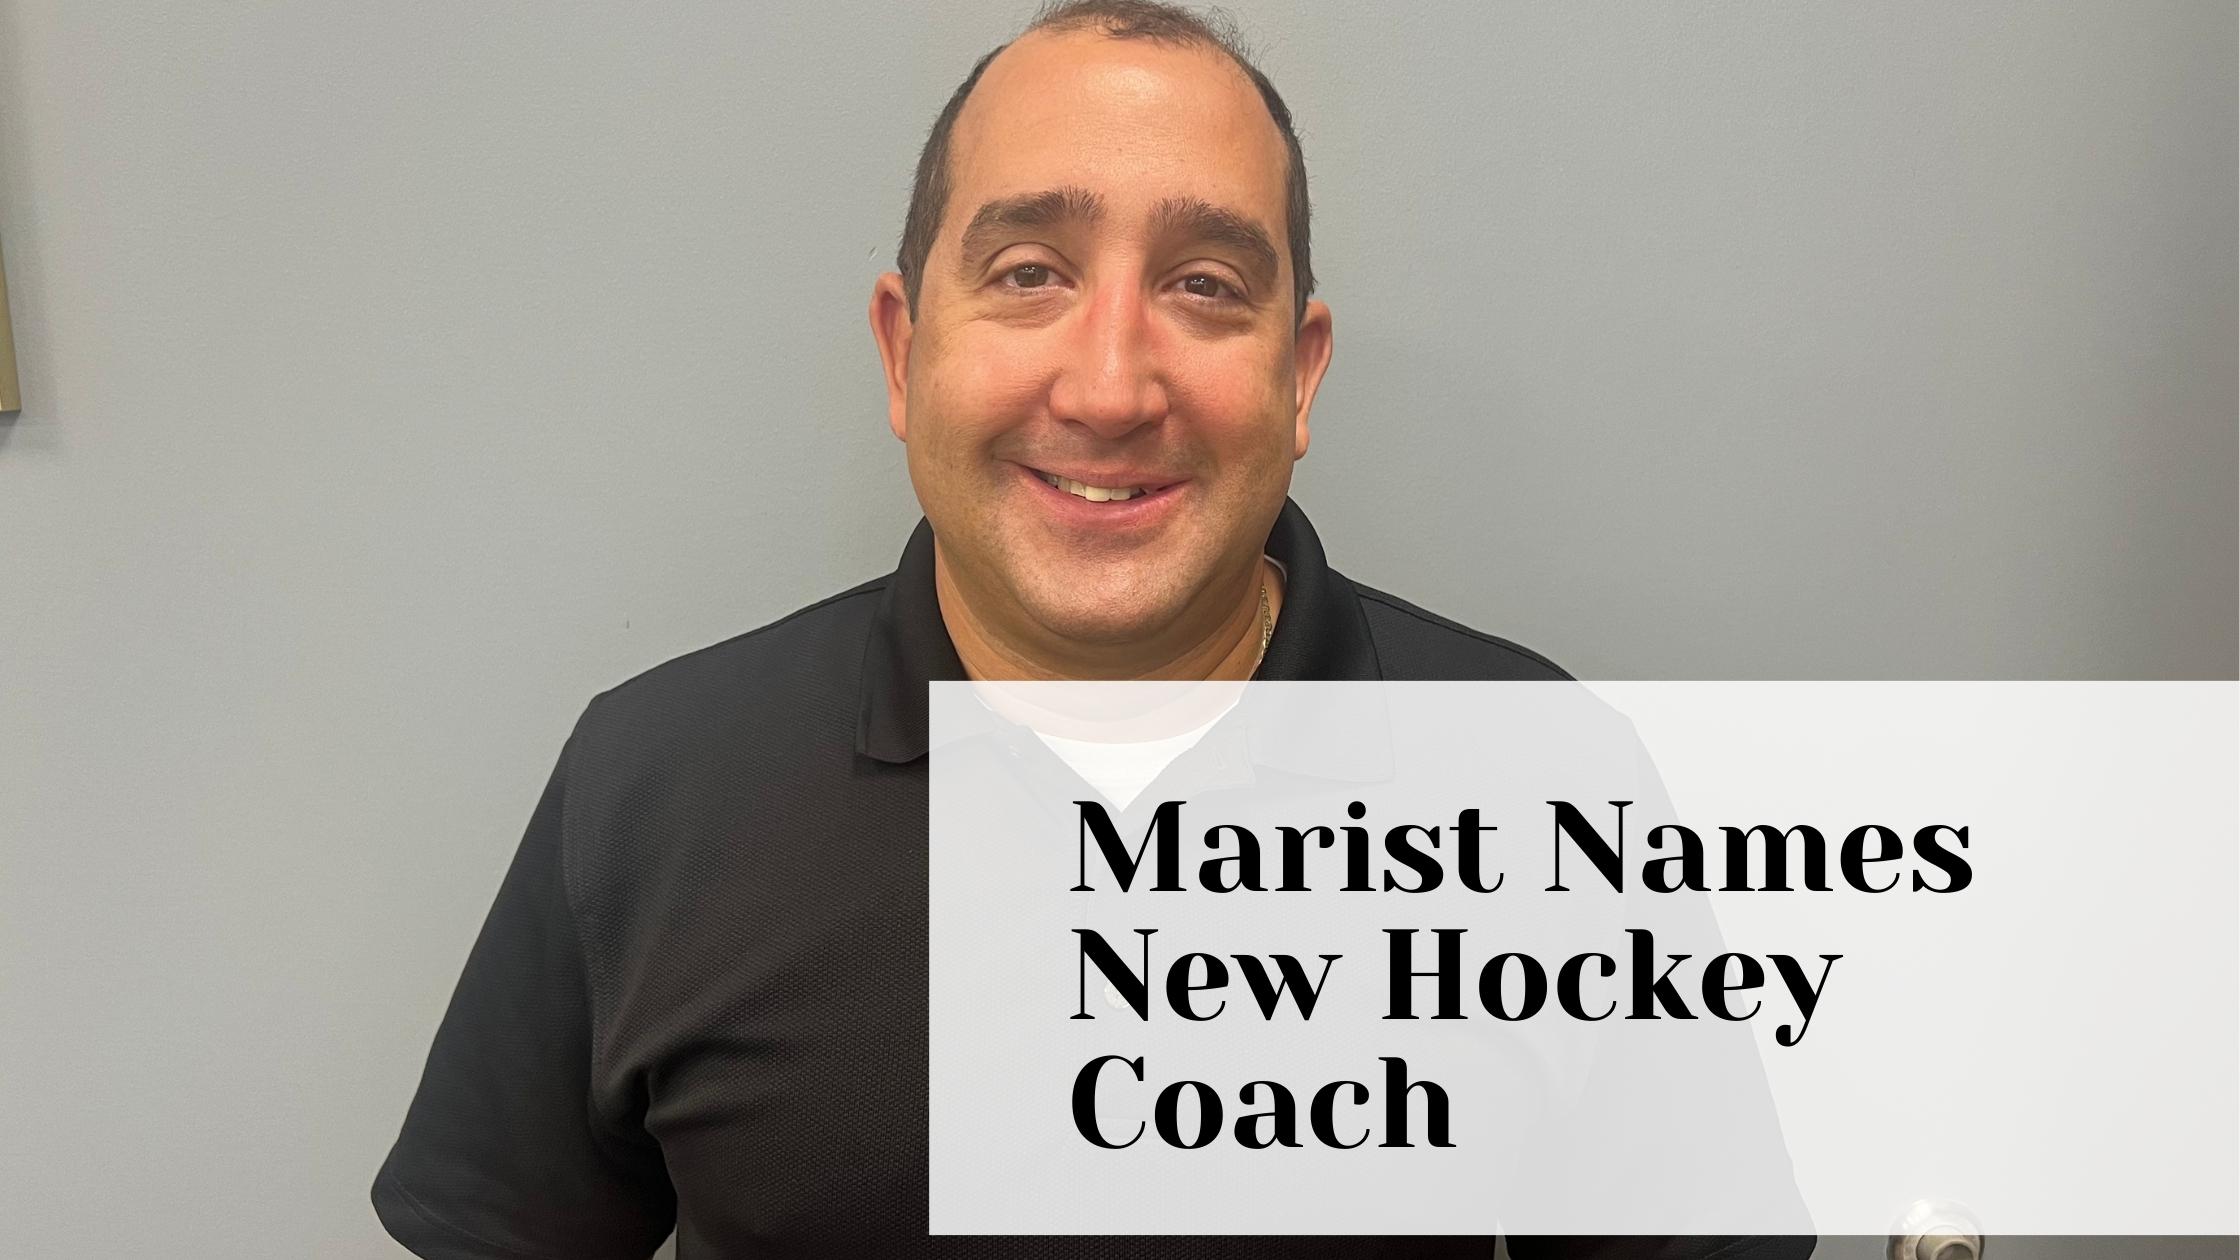 Marist Names New Hockey Coach